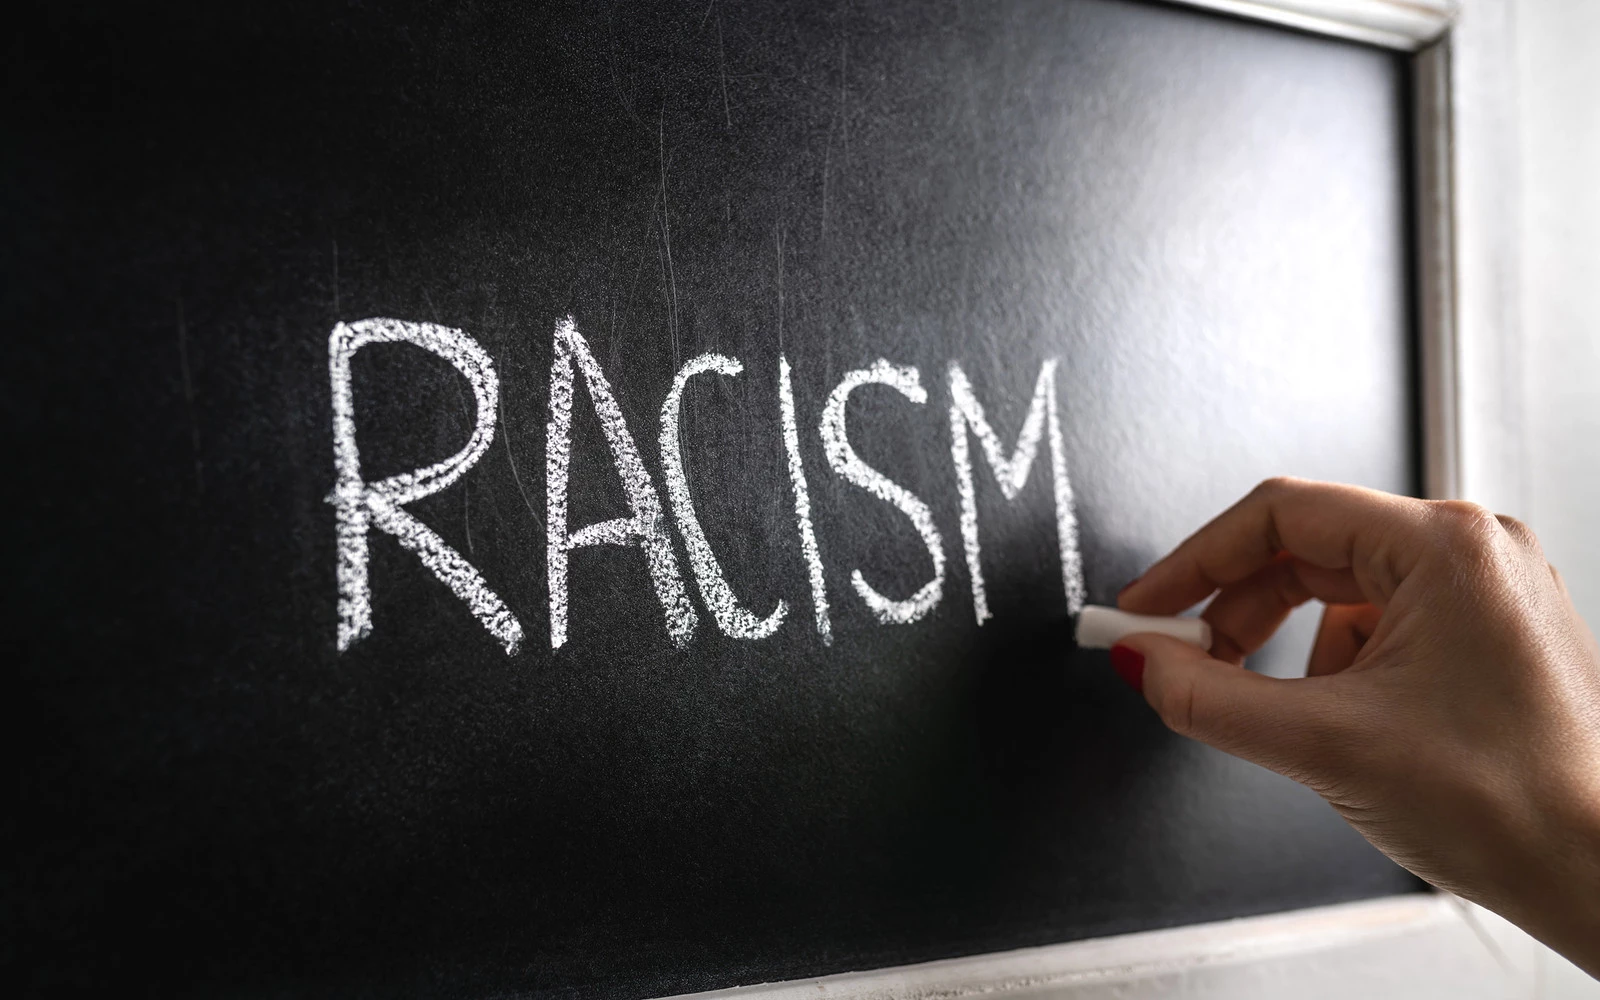 Racism on Chalkboard